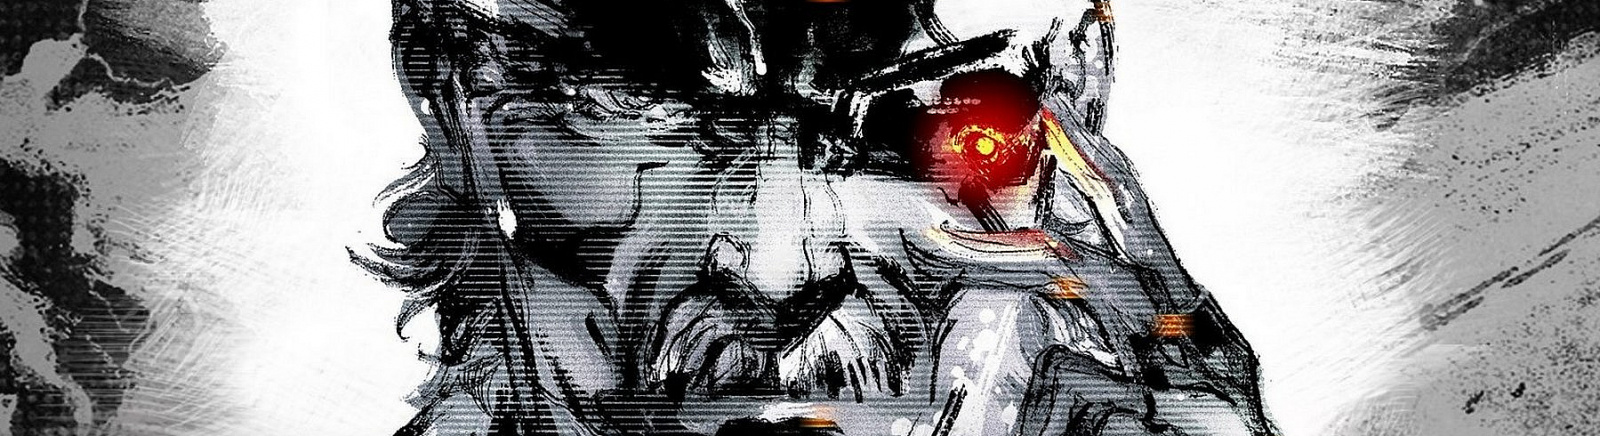 Дата выхода Metal Gear Solid 4: Guns of the Patriots (MGS4)  на PS3 в России и во всем мире